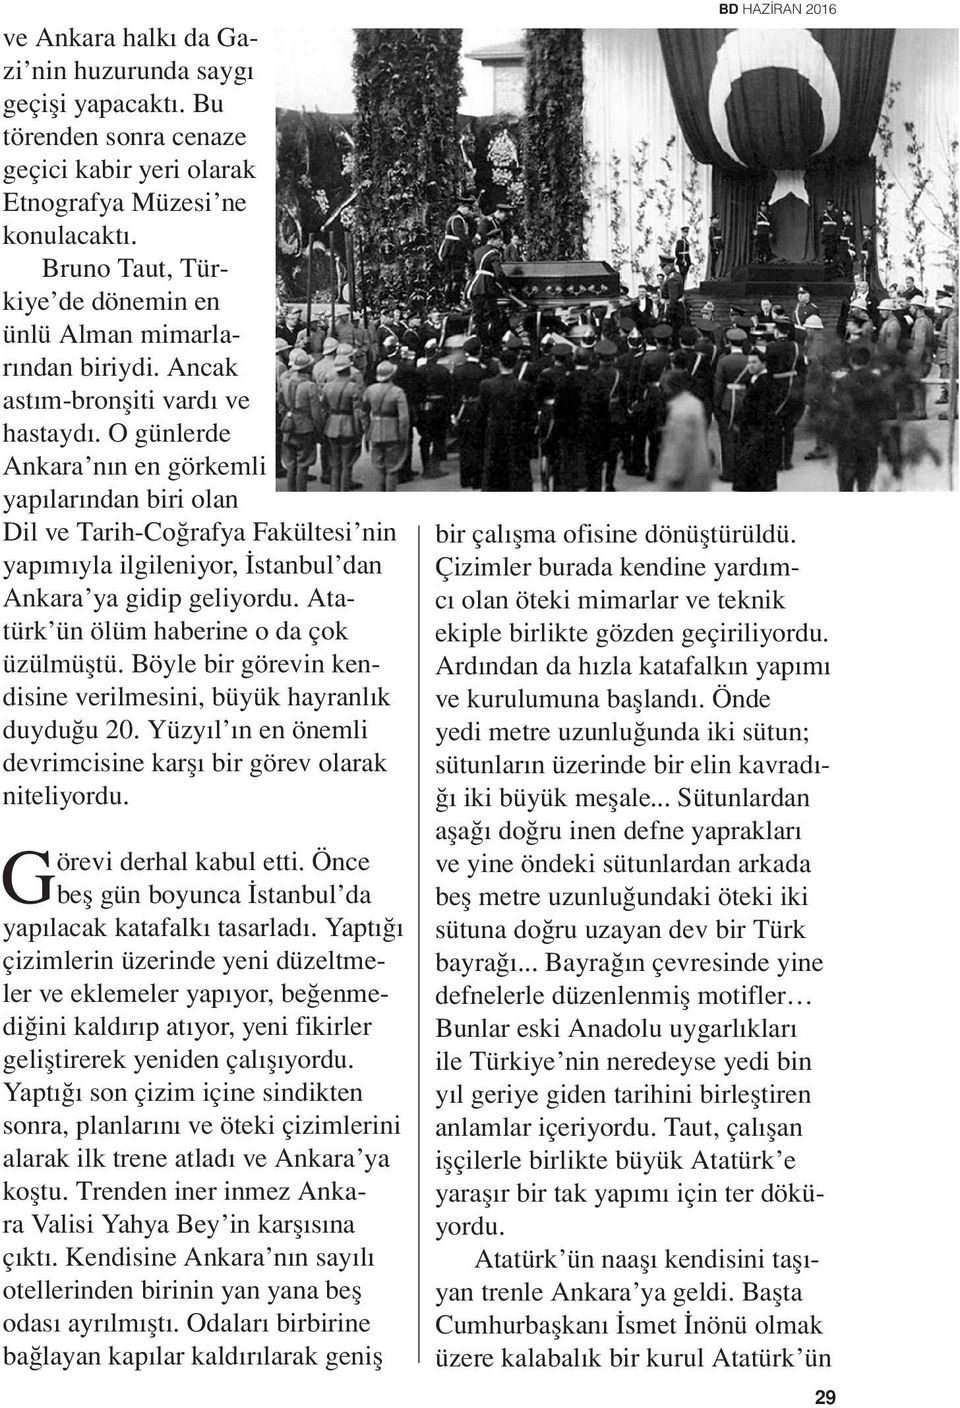 O günlerde Ankara nın en görkemli yapılarından biri olan Dil ve Tarih-Coğrafya Fakültesi nin yapımıyla ilgileniyor, İstanbul dan Ankara ya gidip geliyordu. Atatürk ün ölüm haberine o da çok üzülmüştü.